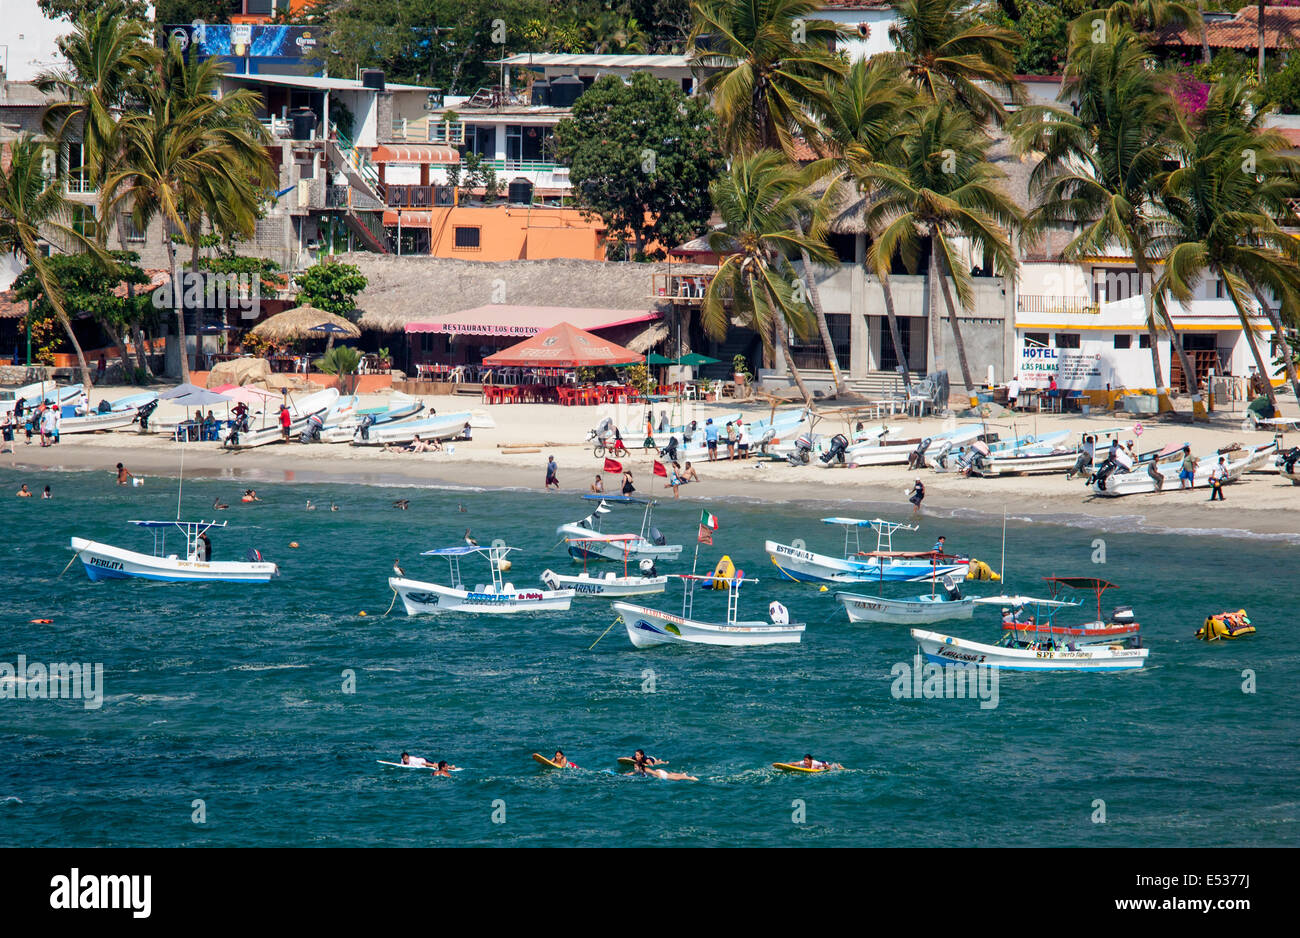 La principale spiaggia di Puerto Escondido, Oaxaca foderato con barche da pesca, Messico. Foto Stock